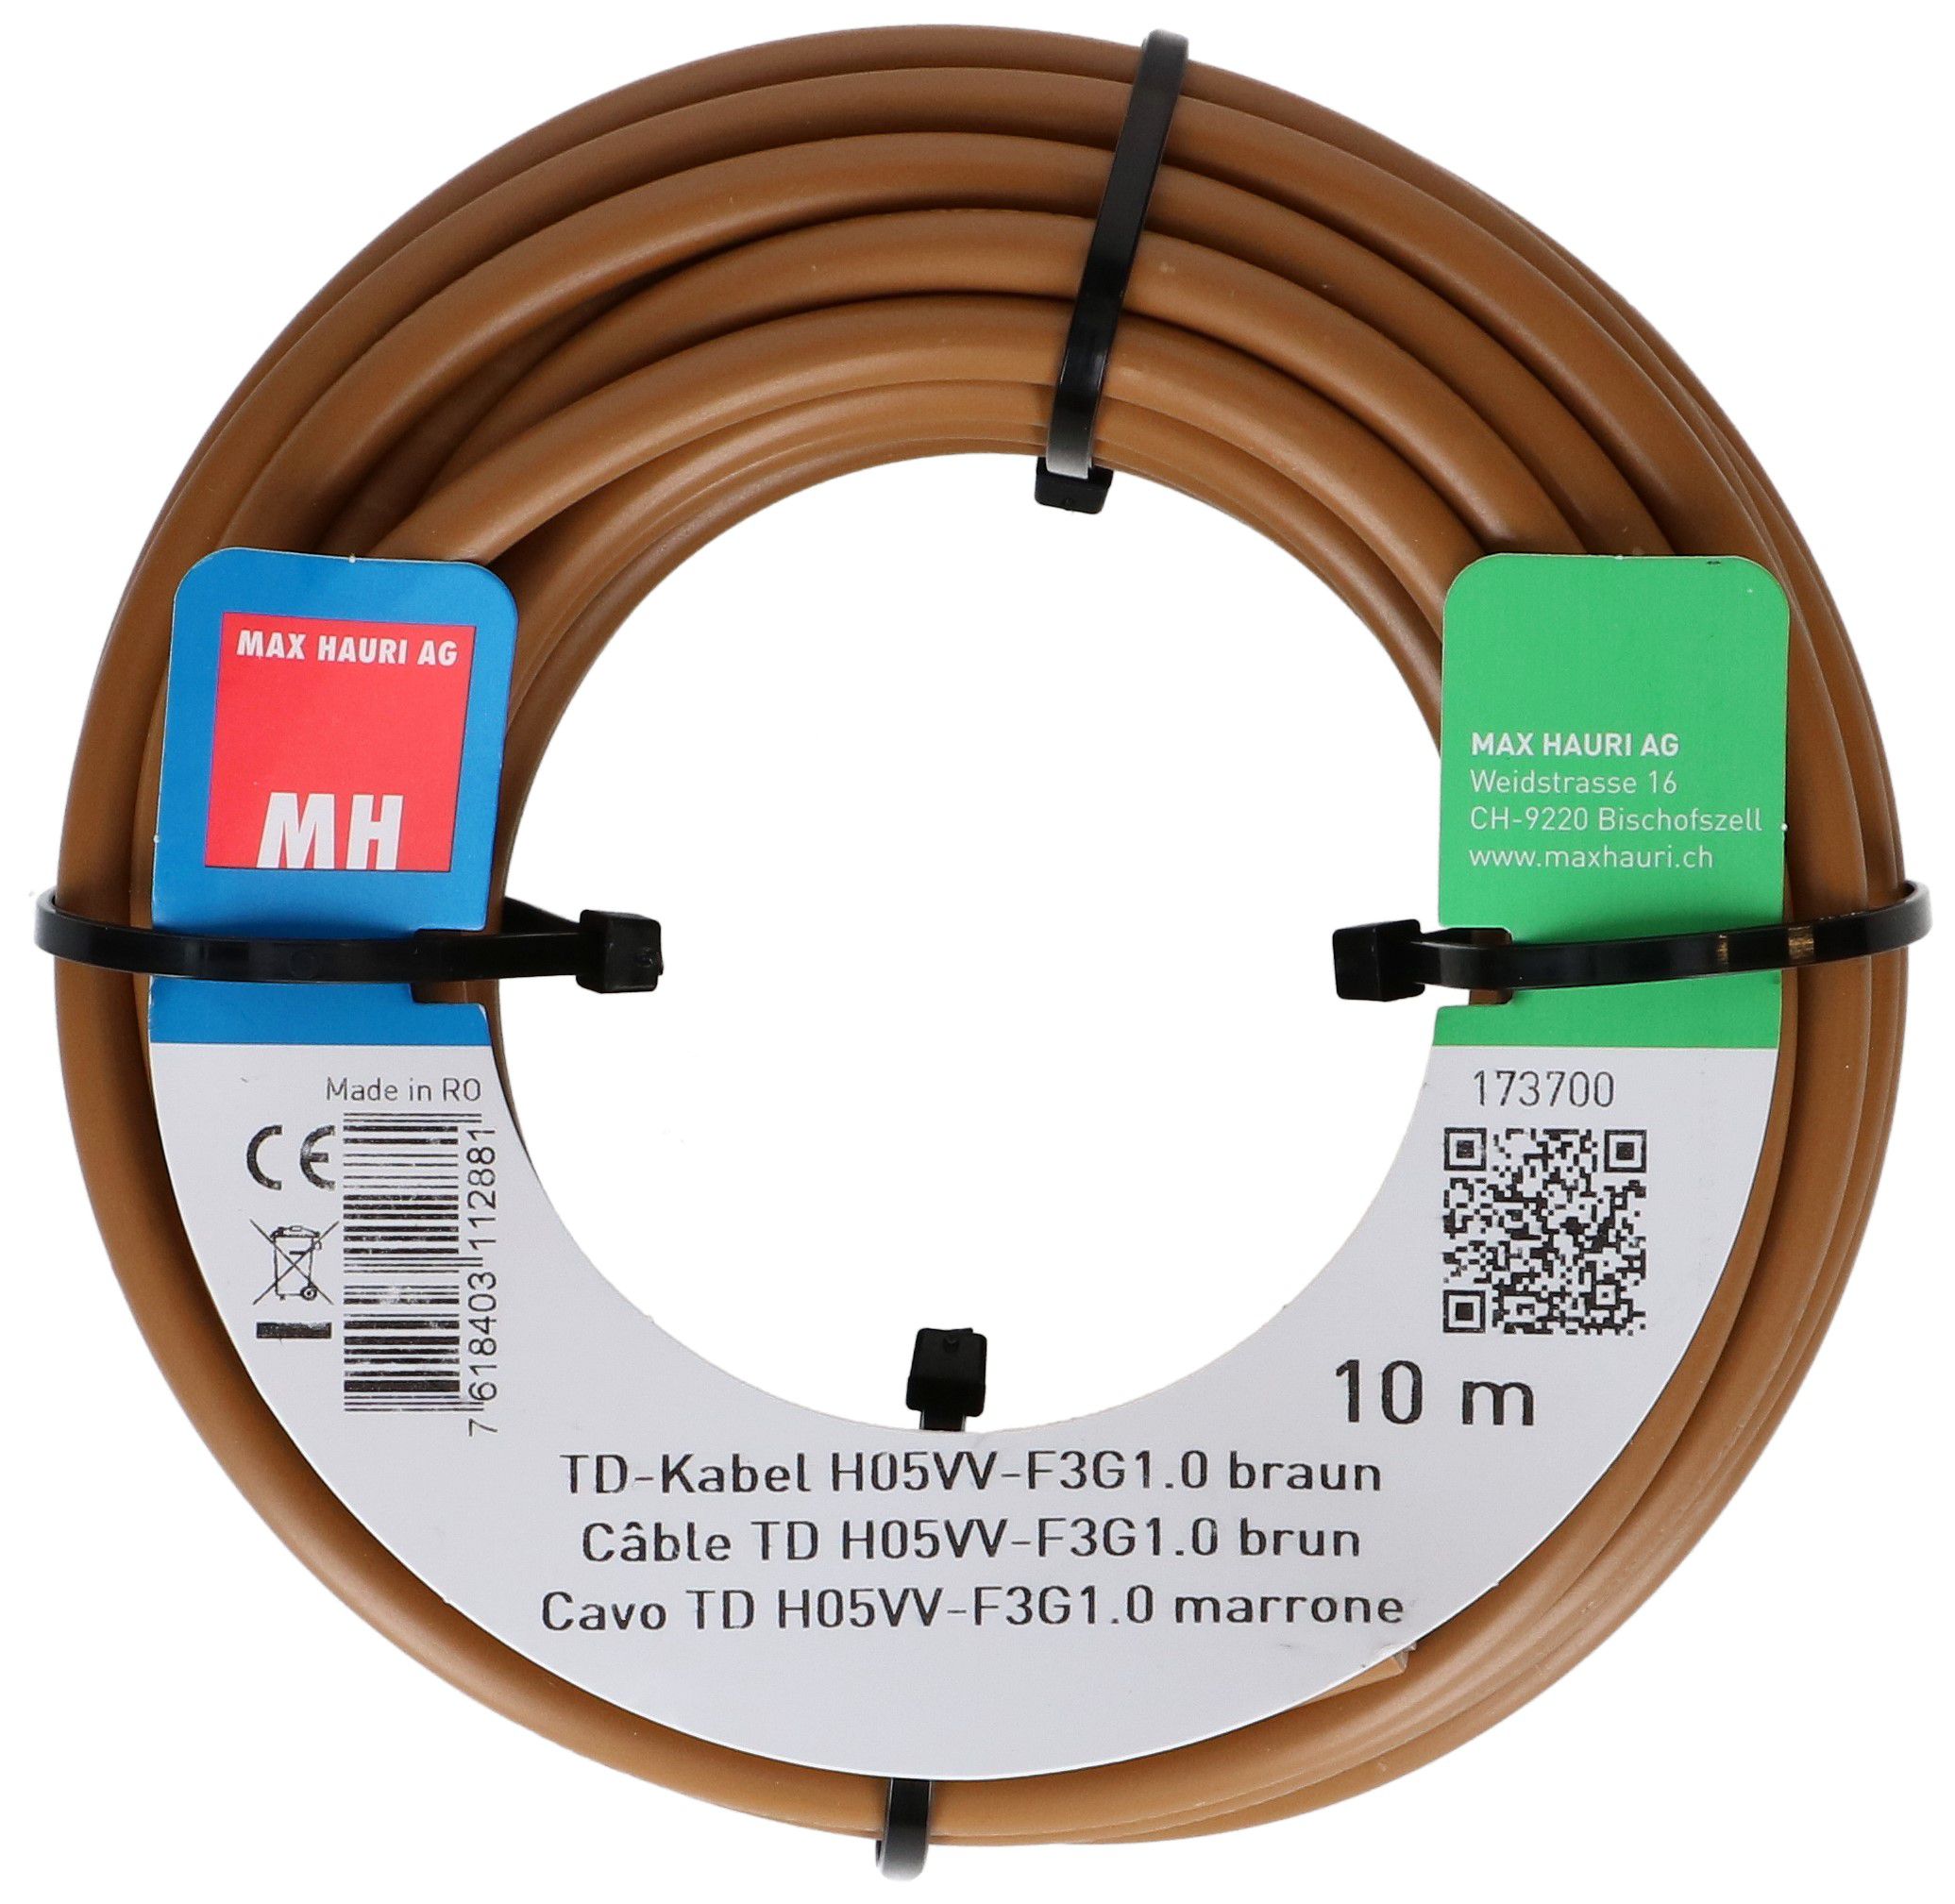 TD-Kabel H05VV-F3G1.0 10m braun